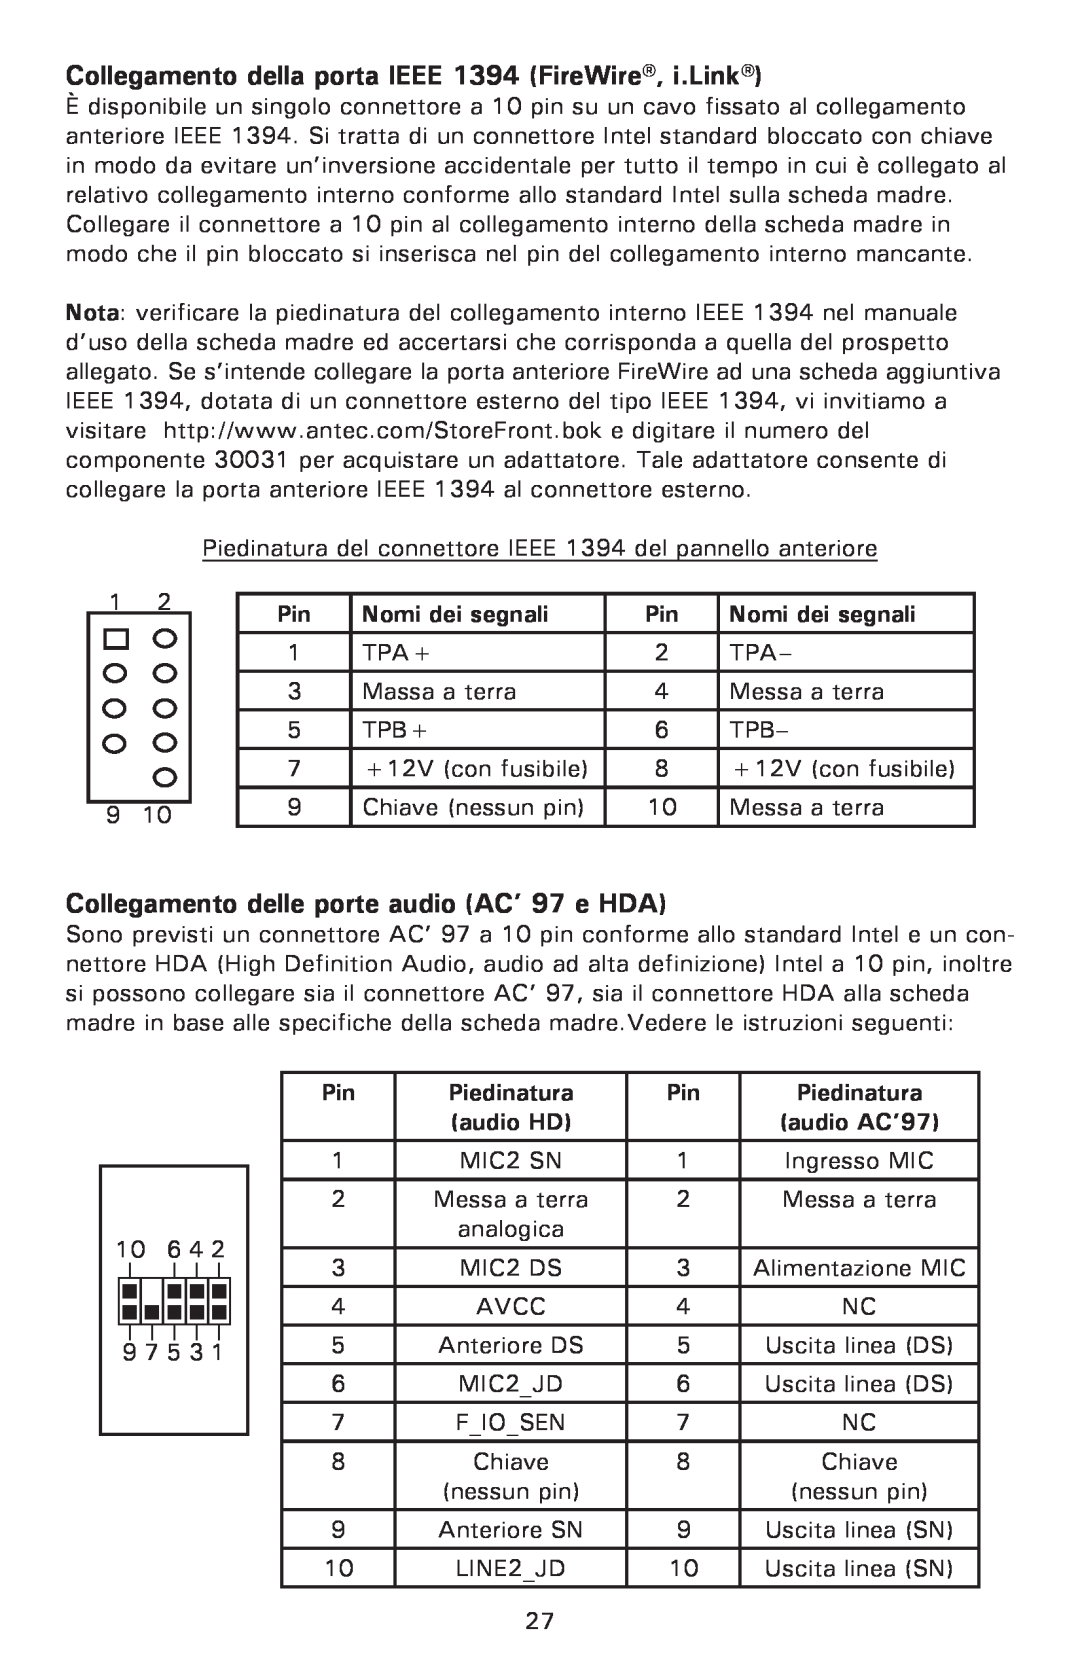 Antec P182 Collegamento della porta IEEE 1394 FireWire, i.Link, Collegamento delle porte audio AC’ 97 e HDA, Piedinatura 